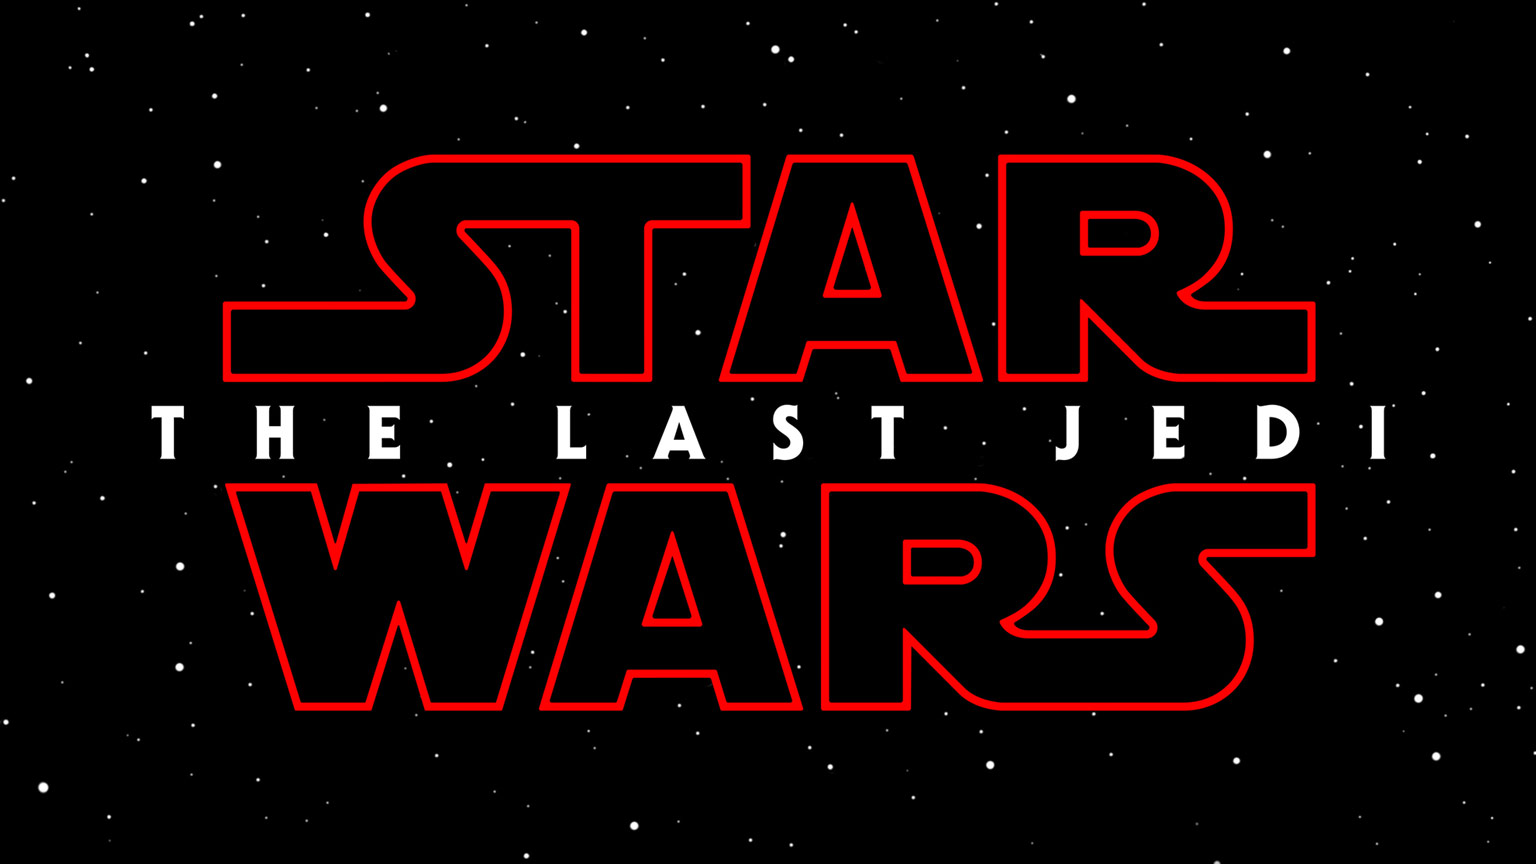 Star Wars The Last Jedi LEGO set info revealed